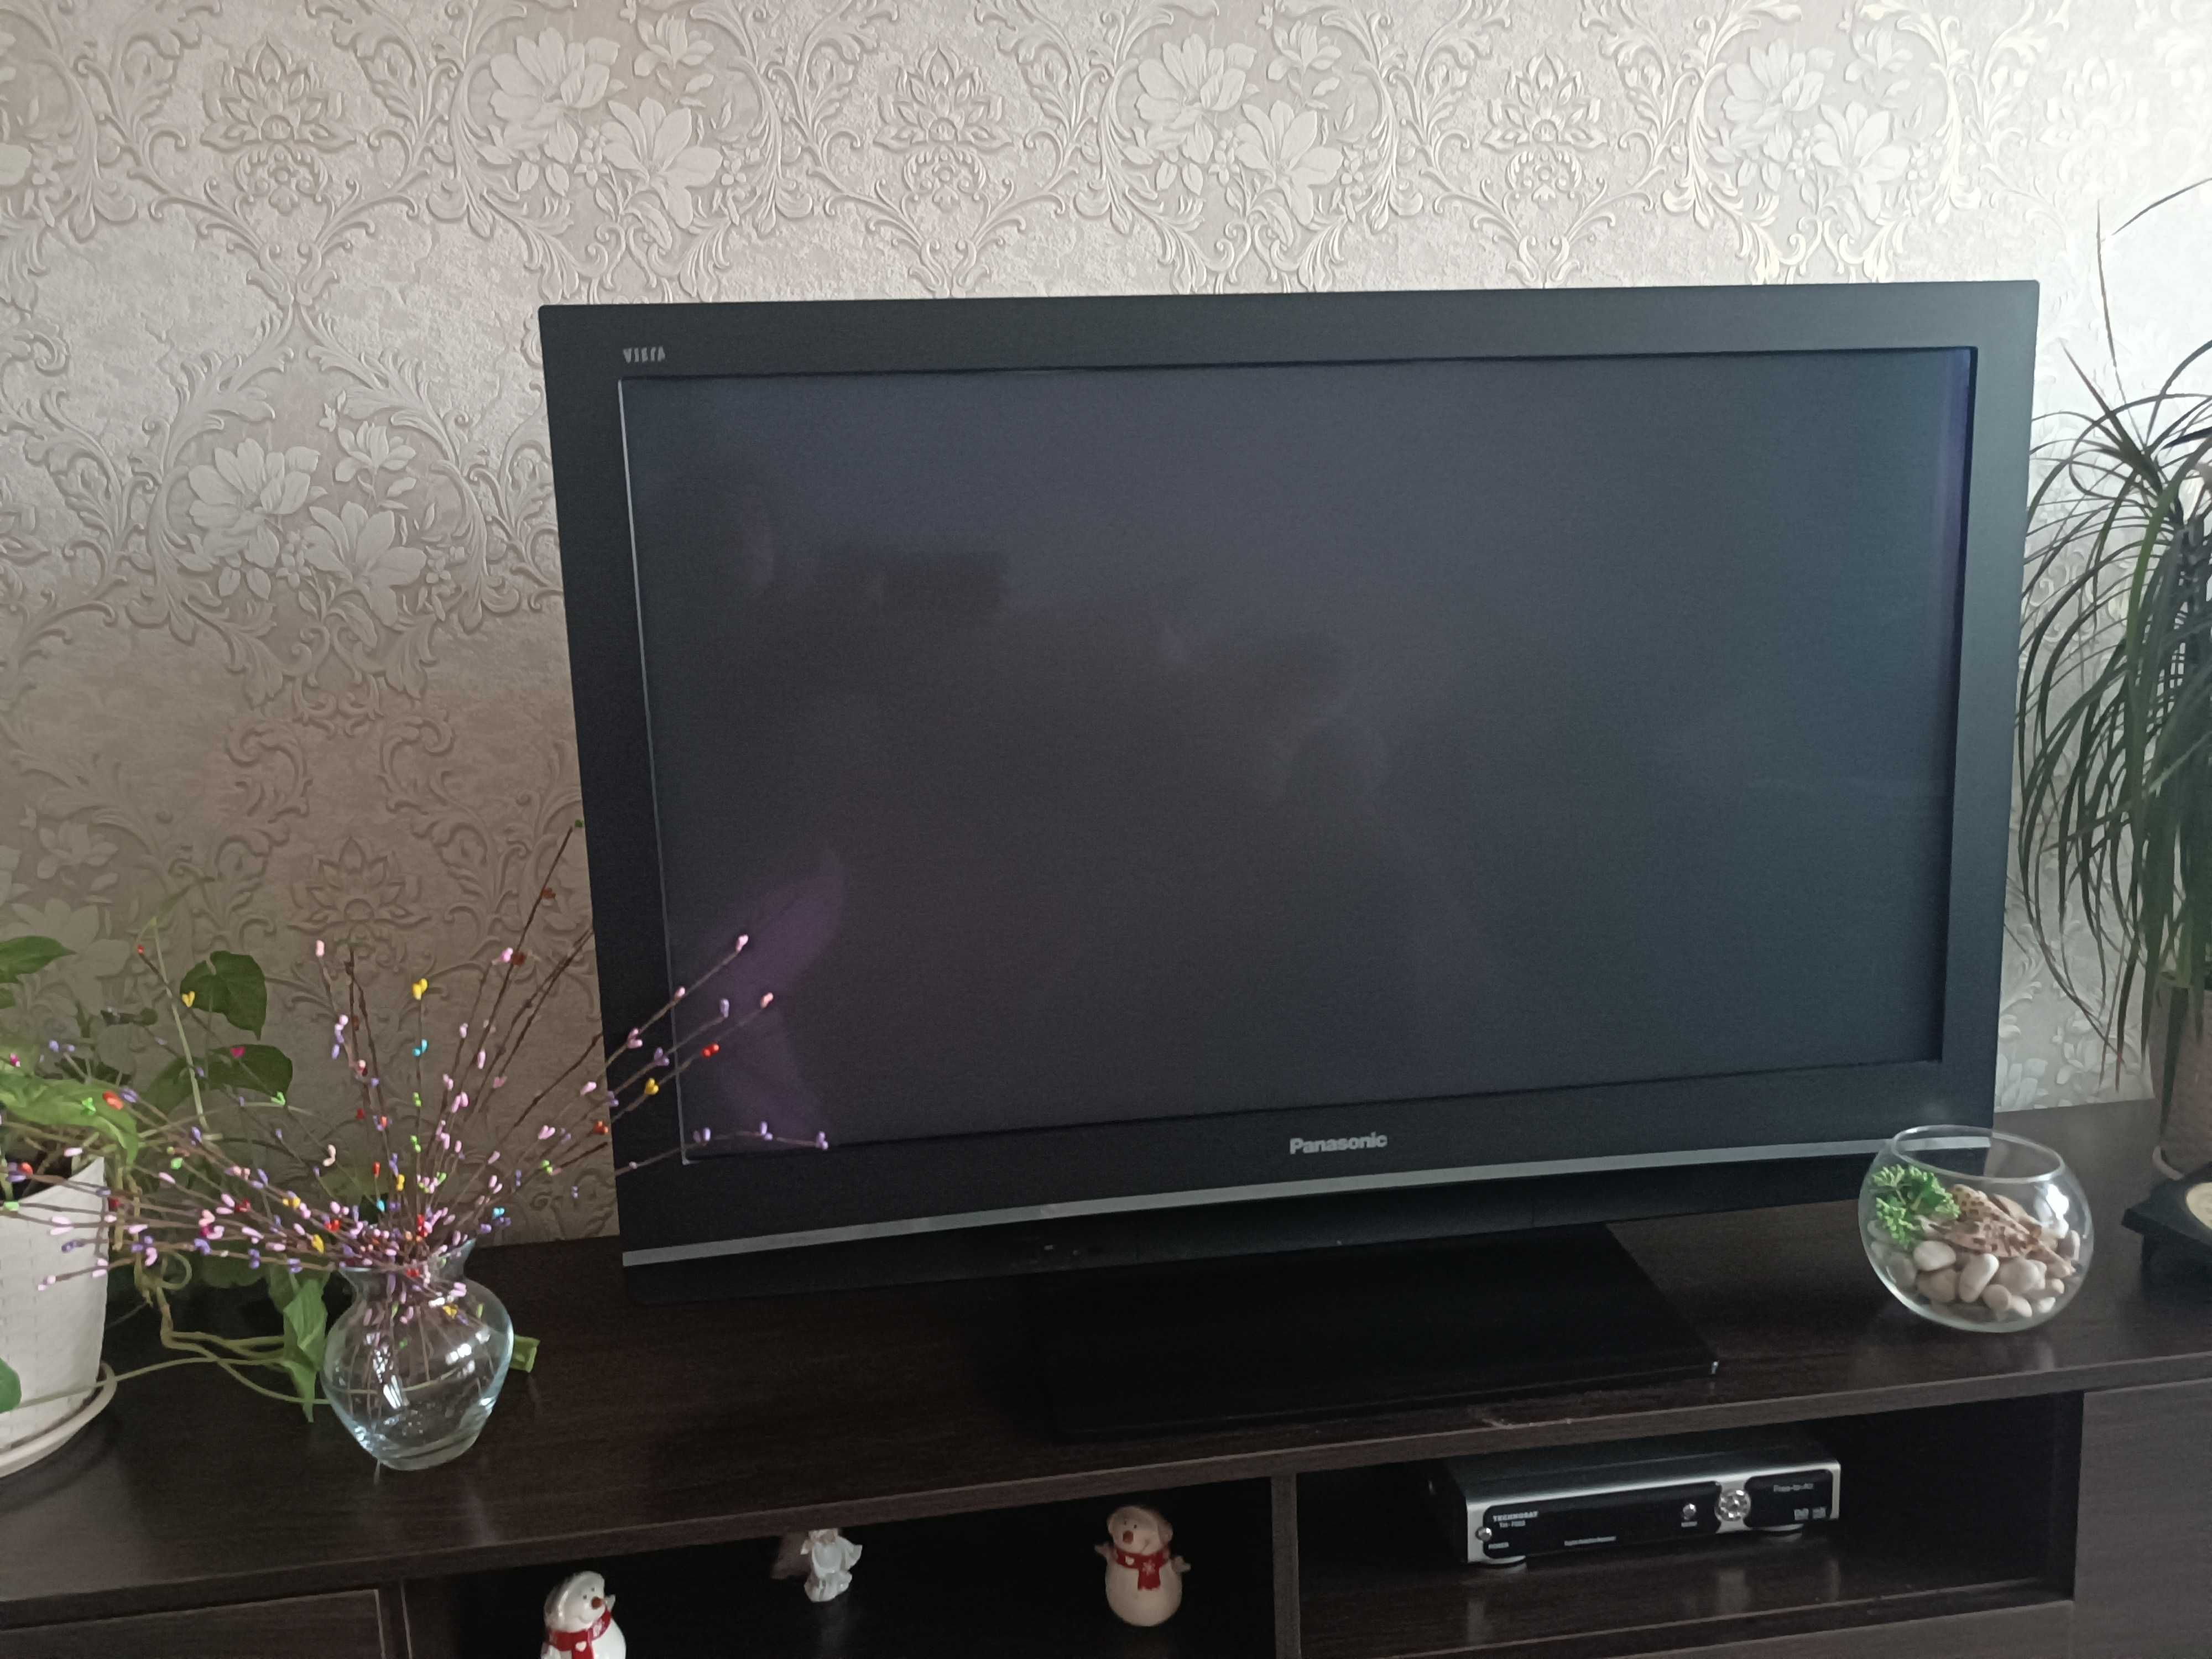 Плазмовый телевизор Panasonic Viera 42 дюйма